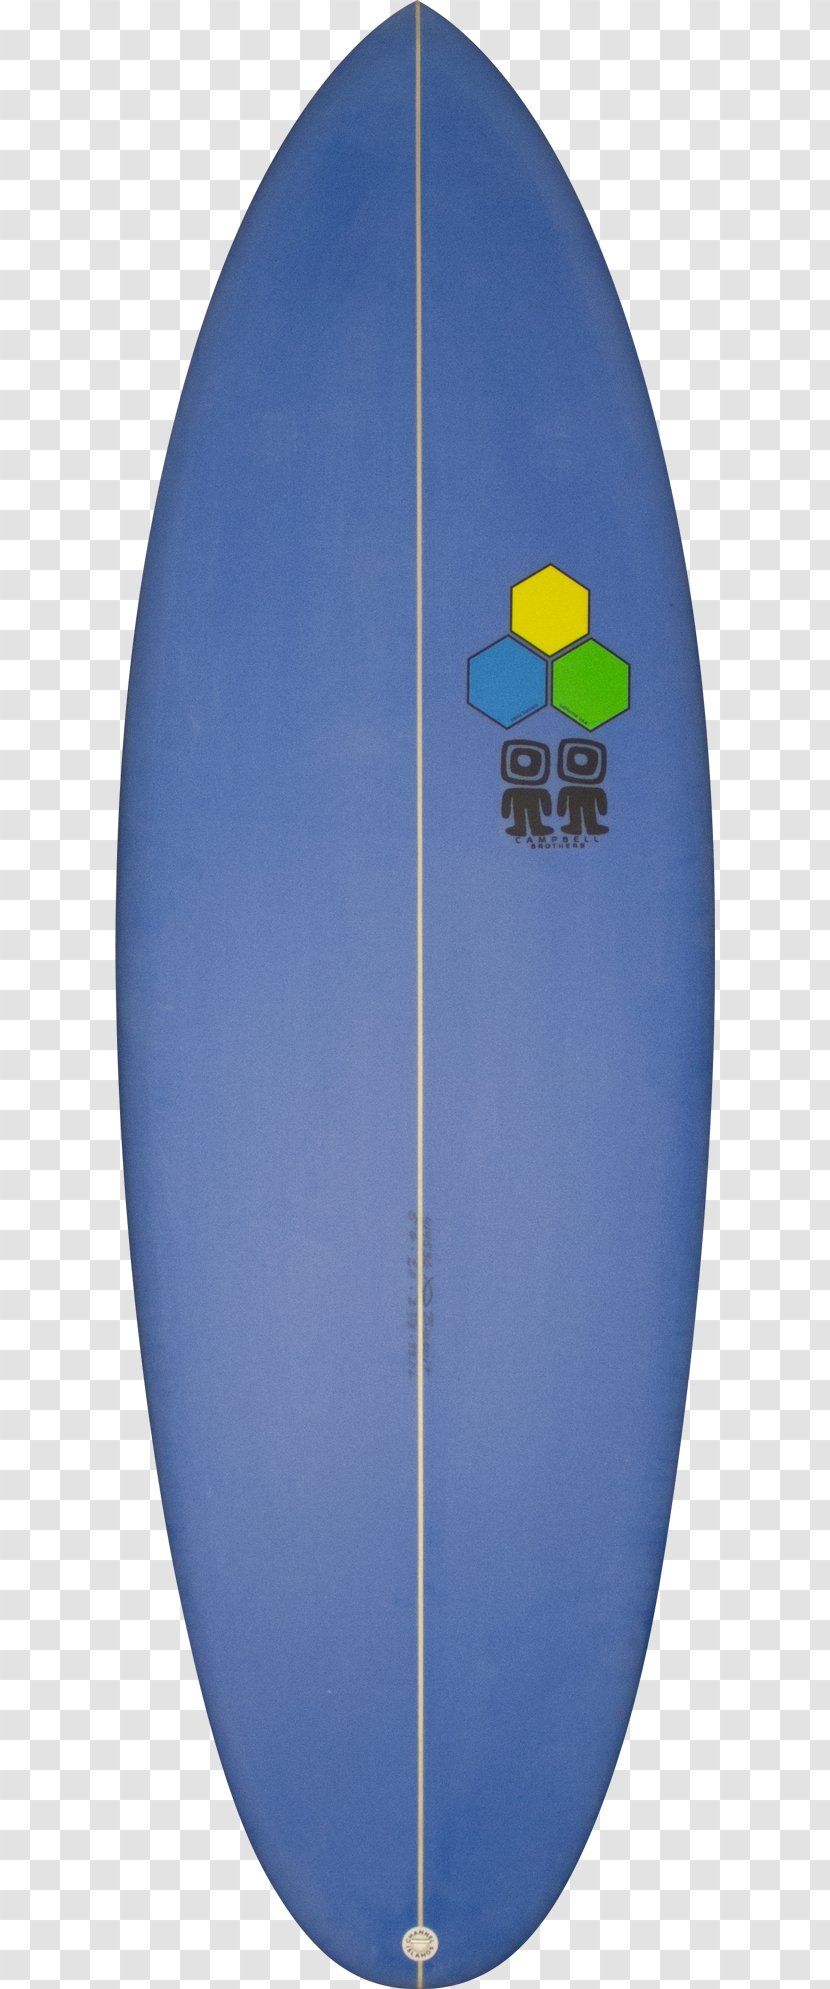 Channel Islands Bonzer Surfing Surfboard New Flyer - Sky - SURF BOARD Transparent PNG